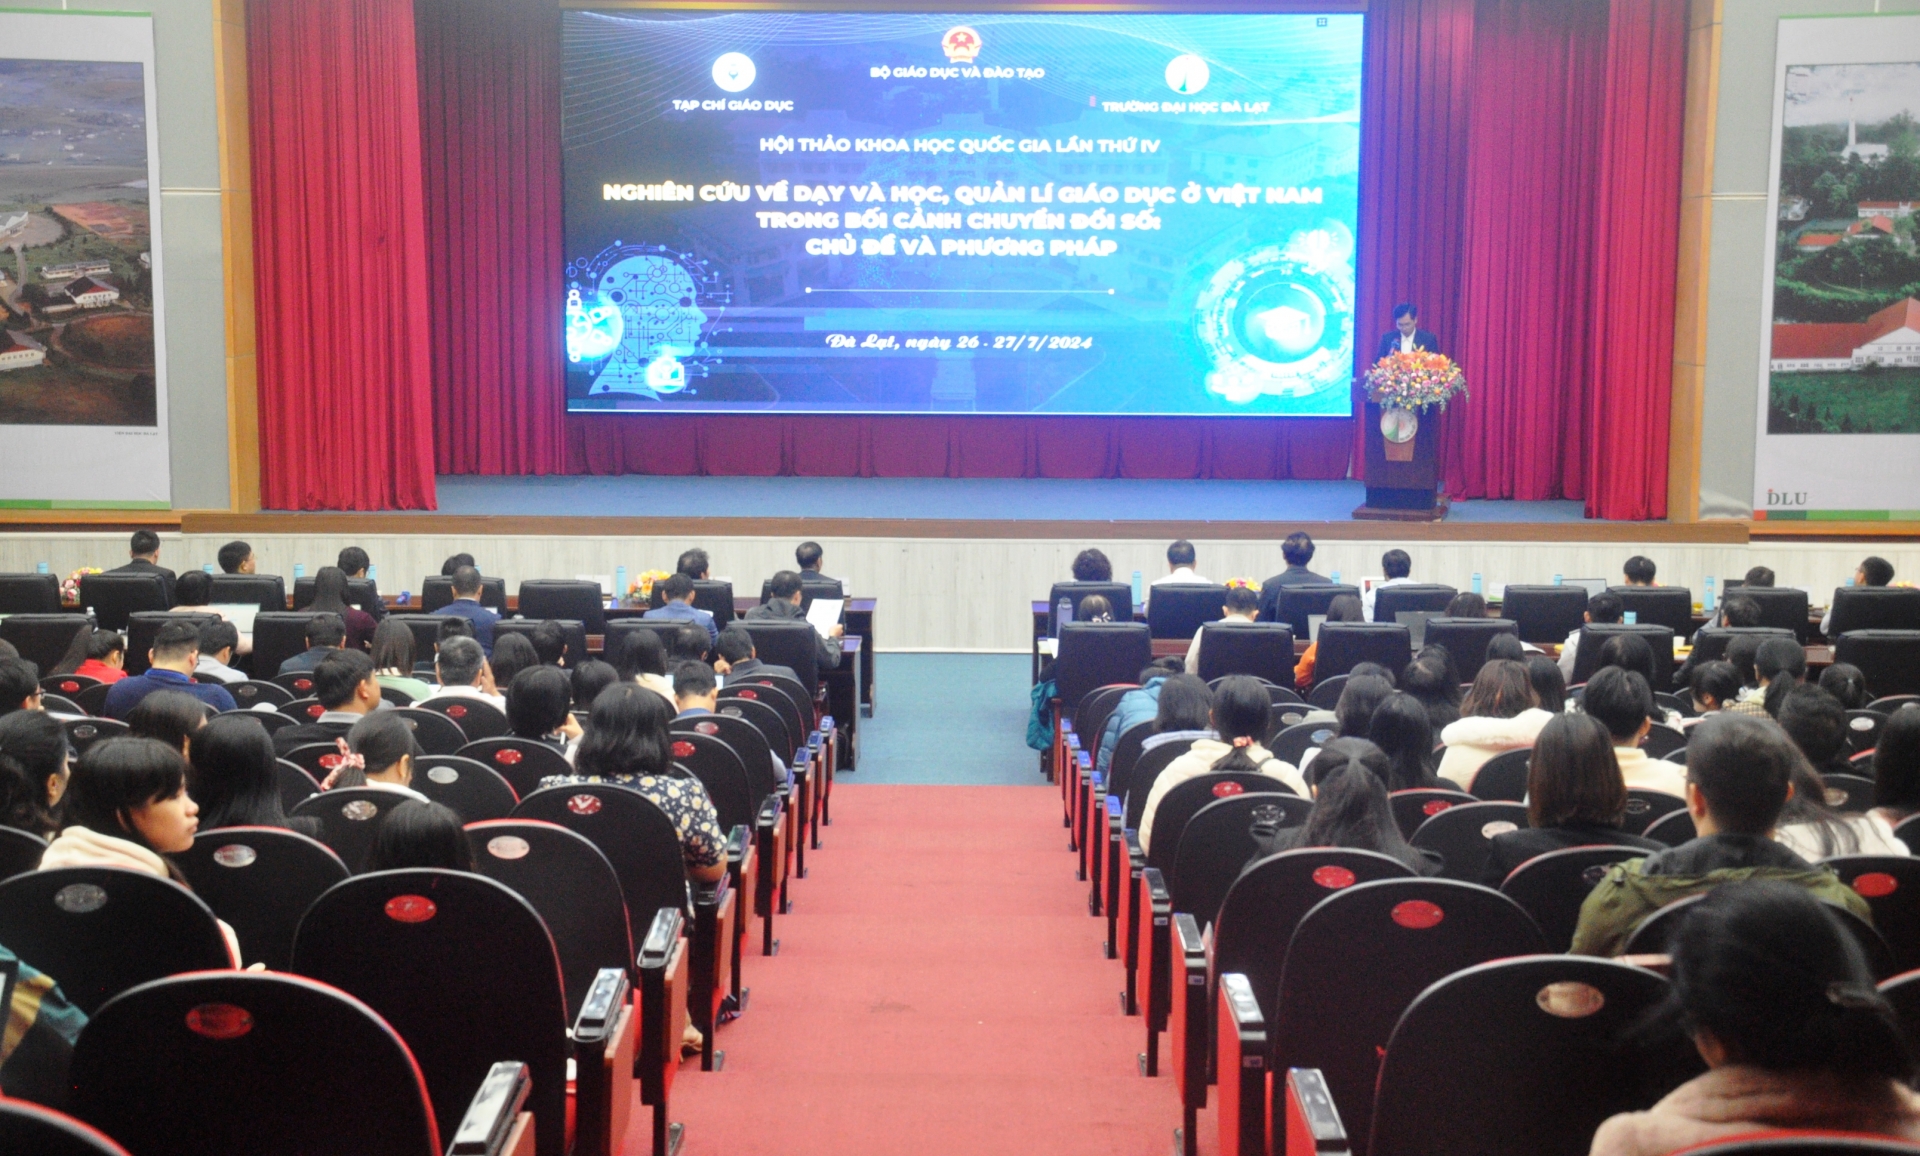 Hội thảo Khoa học quốc gia “Nghiên cứu về dạy và học, quản lý giáo dục ở Việt Nam trong bối cảnh chuyển đổi số: Chủ đề và phương pháp”.